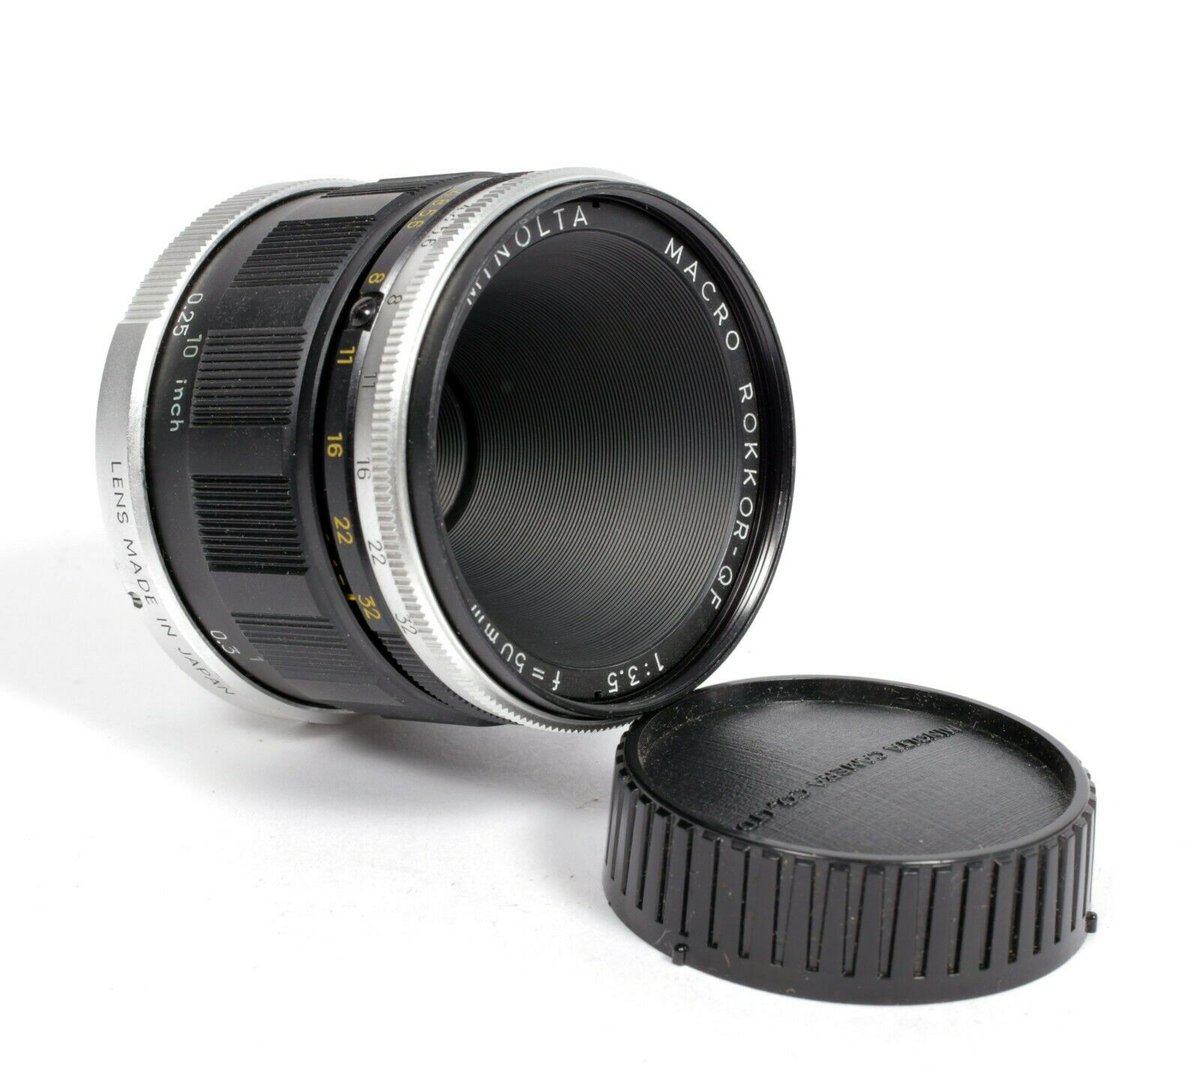 Minolta Macro Rokkor QF 50mm F3.5 MD lens